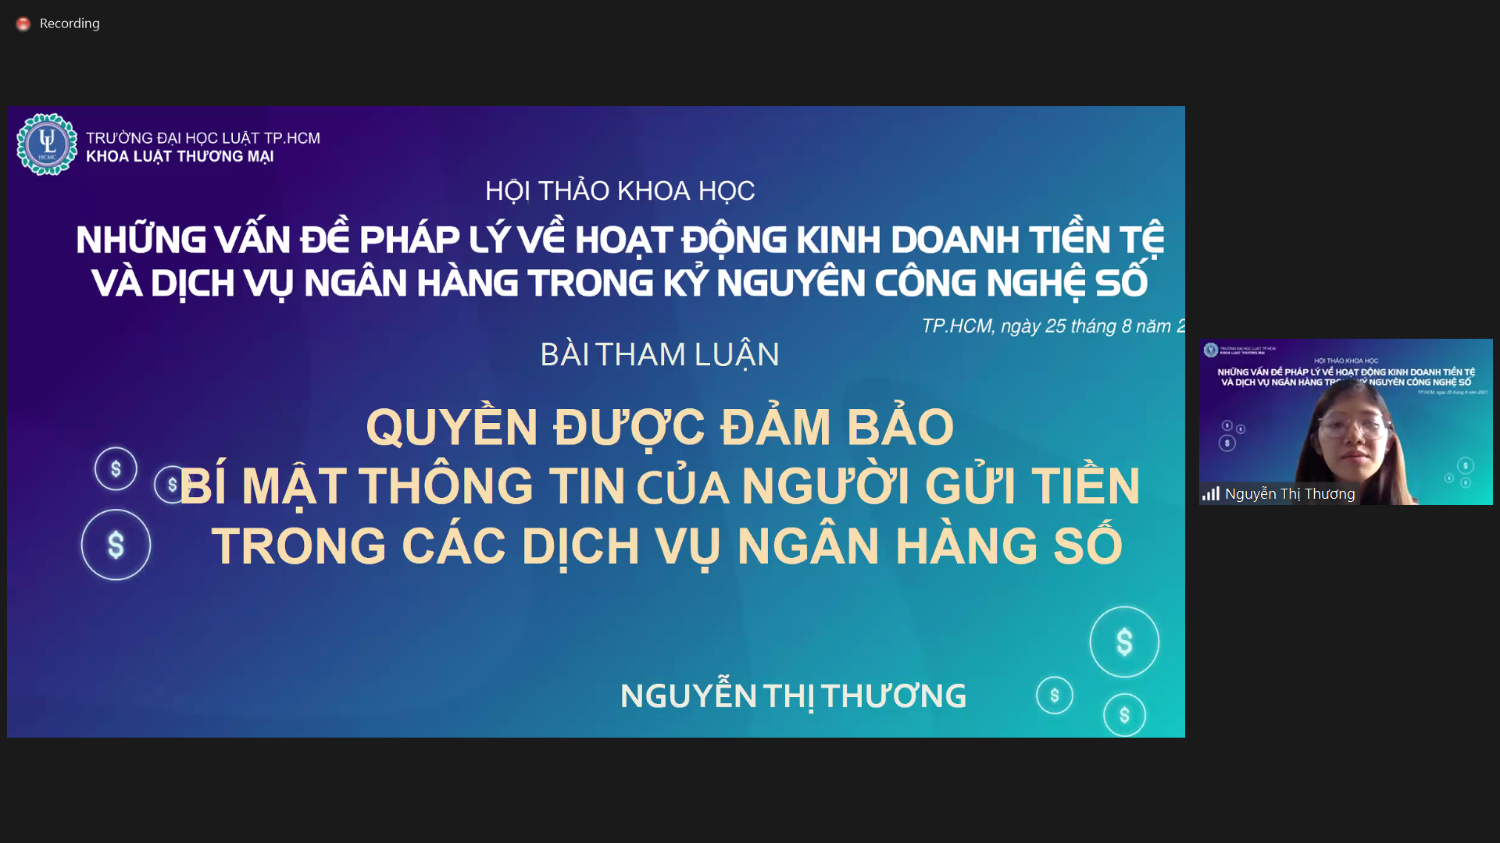 4 Đảm bảo quyền riêng tư của khách hàng trong tham luận của ThS Nguyễn Thị Thương